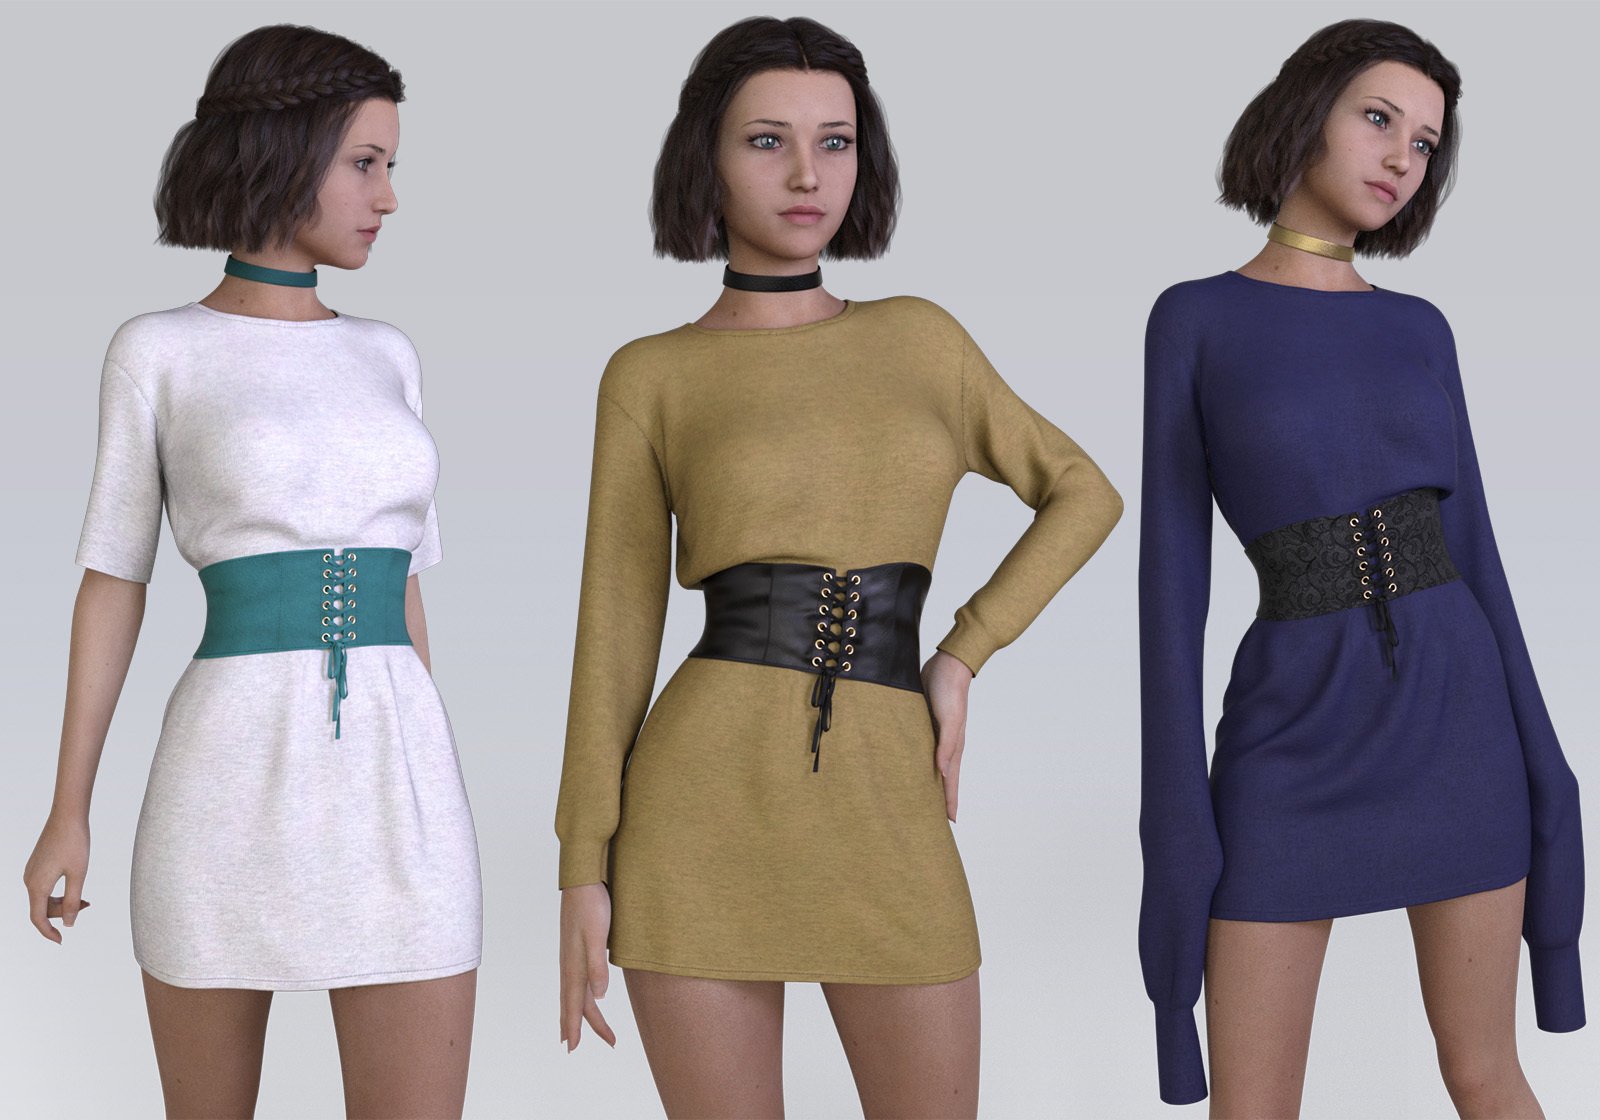 dForce Oversized T-Shirt Dress with Lace Up Corset Belt by: devianttuna13, 3D Models by Daz 3D